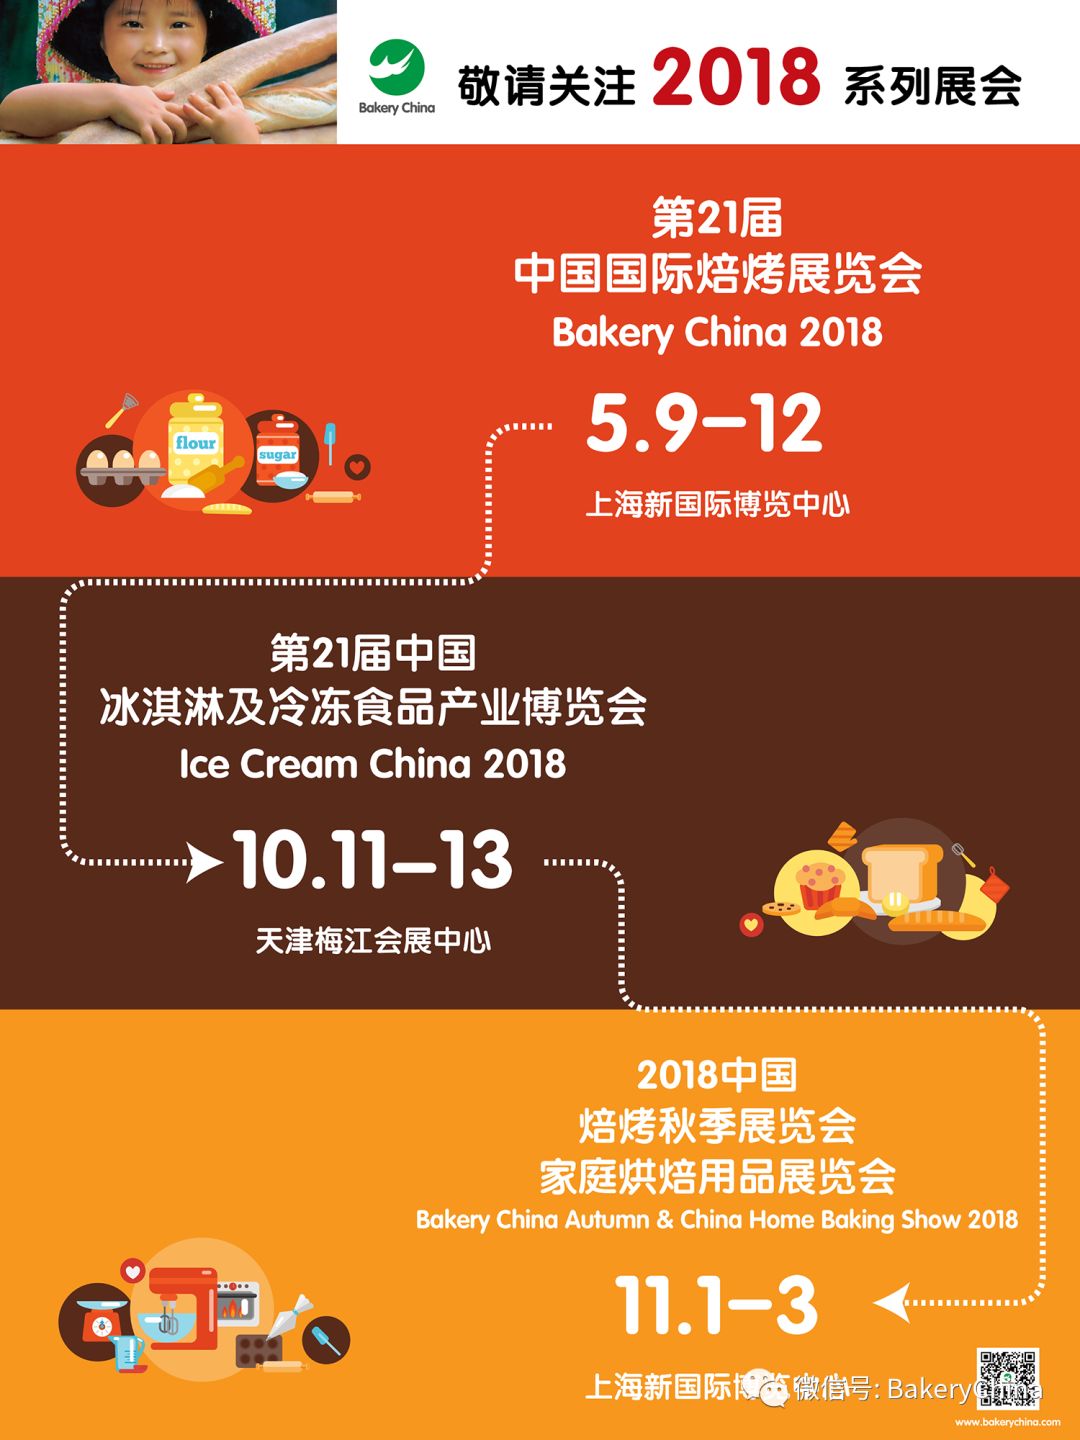 食品展会大全,中国国际焙烤展览会BakeryChina,焙烤展,烘焙展